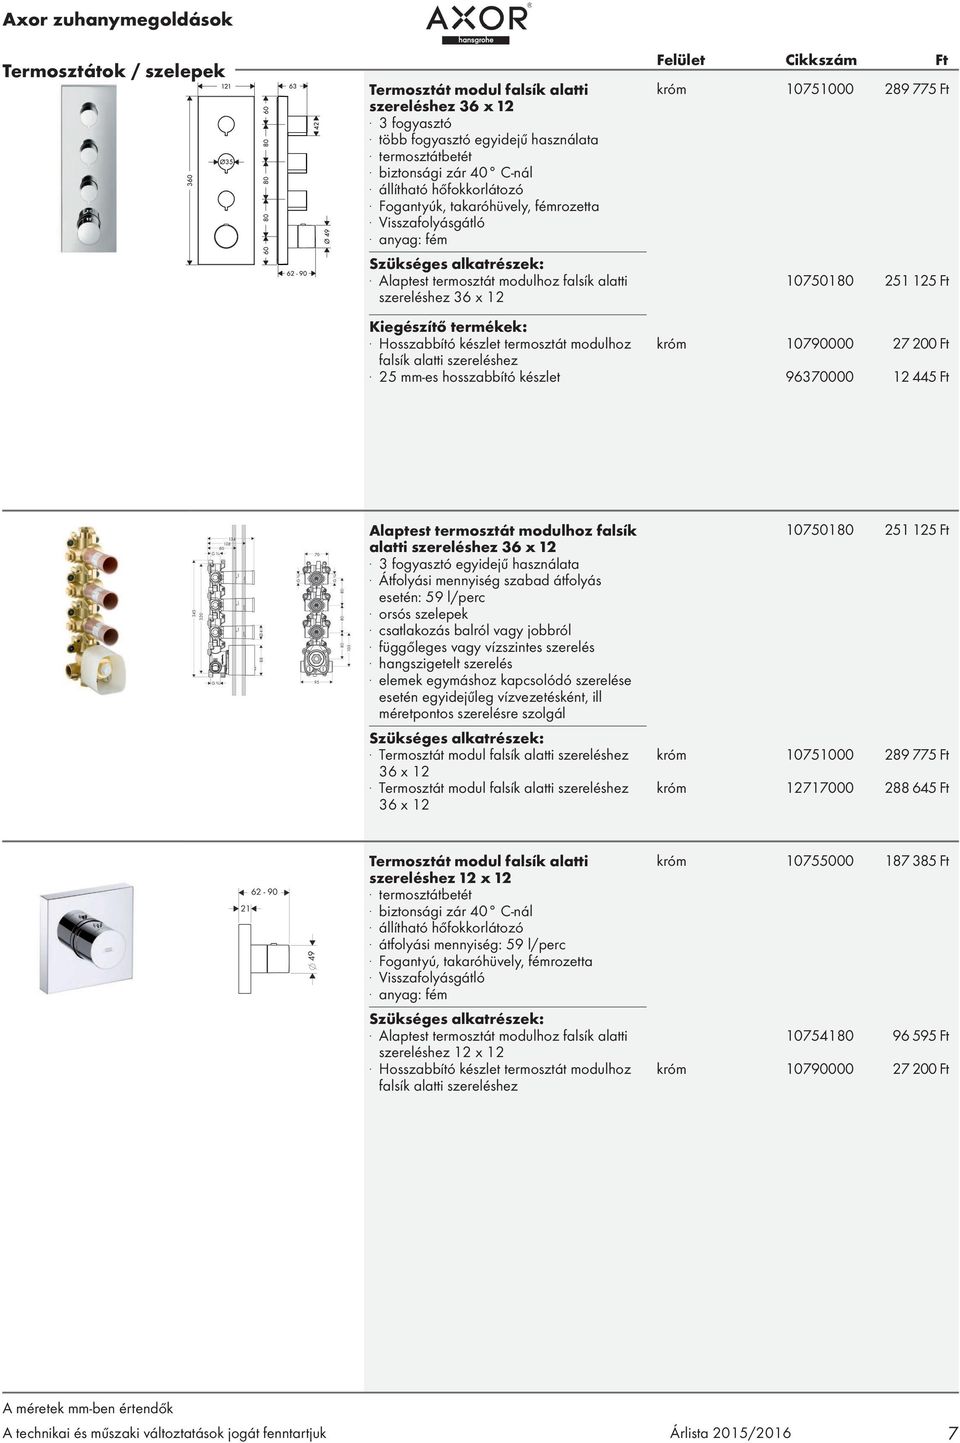 Hosszabbító készlet termosztát modulhoz króm 10790000 27 200 Ft falsík alatti szereléshez.